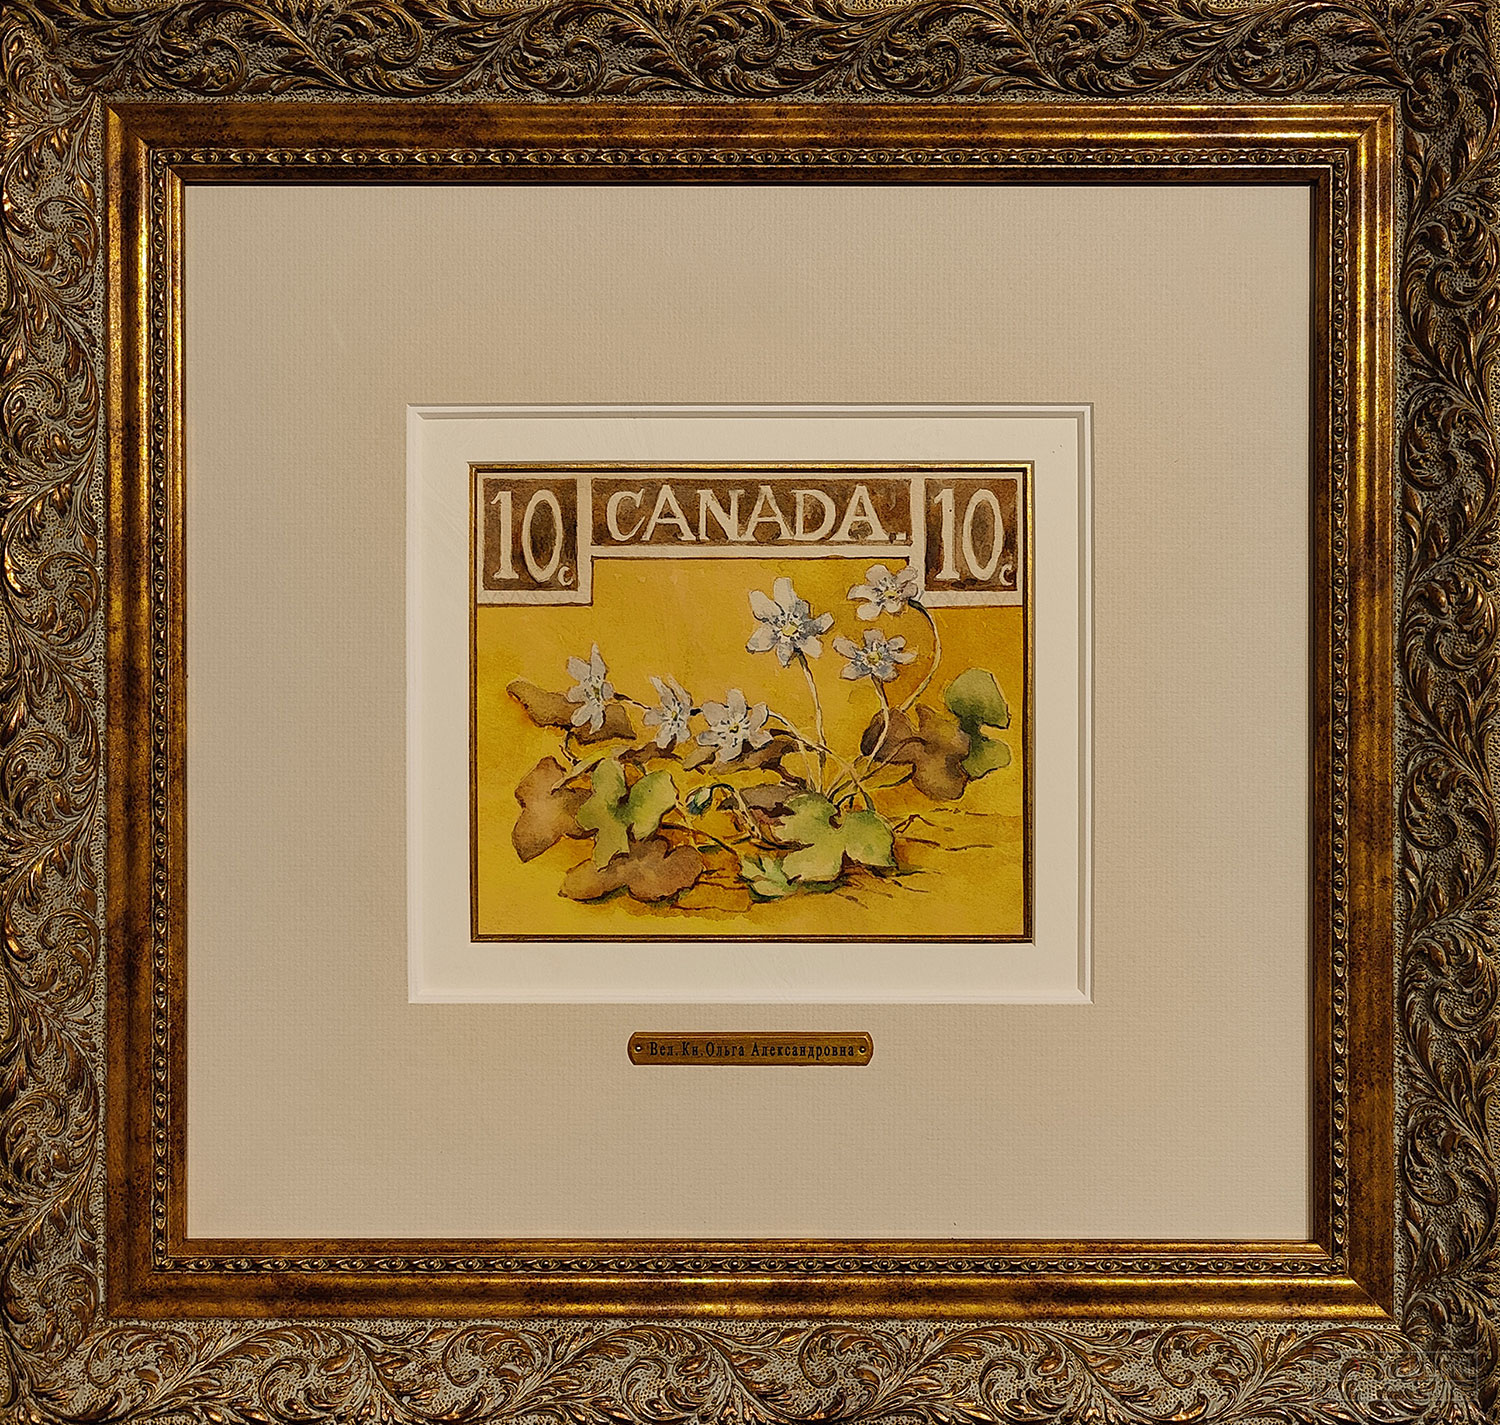 Ольга Александровна Романова. Проект почтовой марки Канады номиналом 10 центов. Рисунок наклеен на бумагу, на которой карандашом написано "OLGA" и "№3". 1950-е